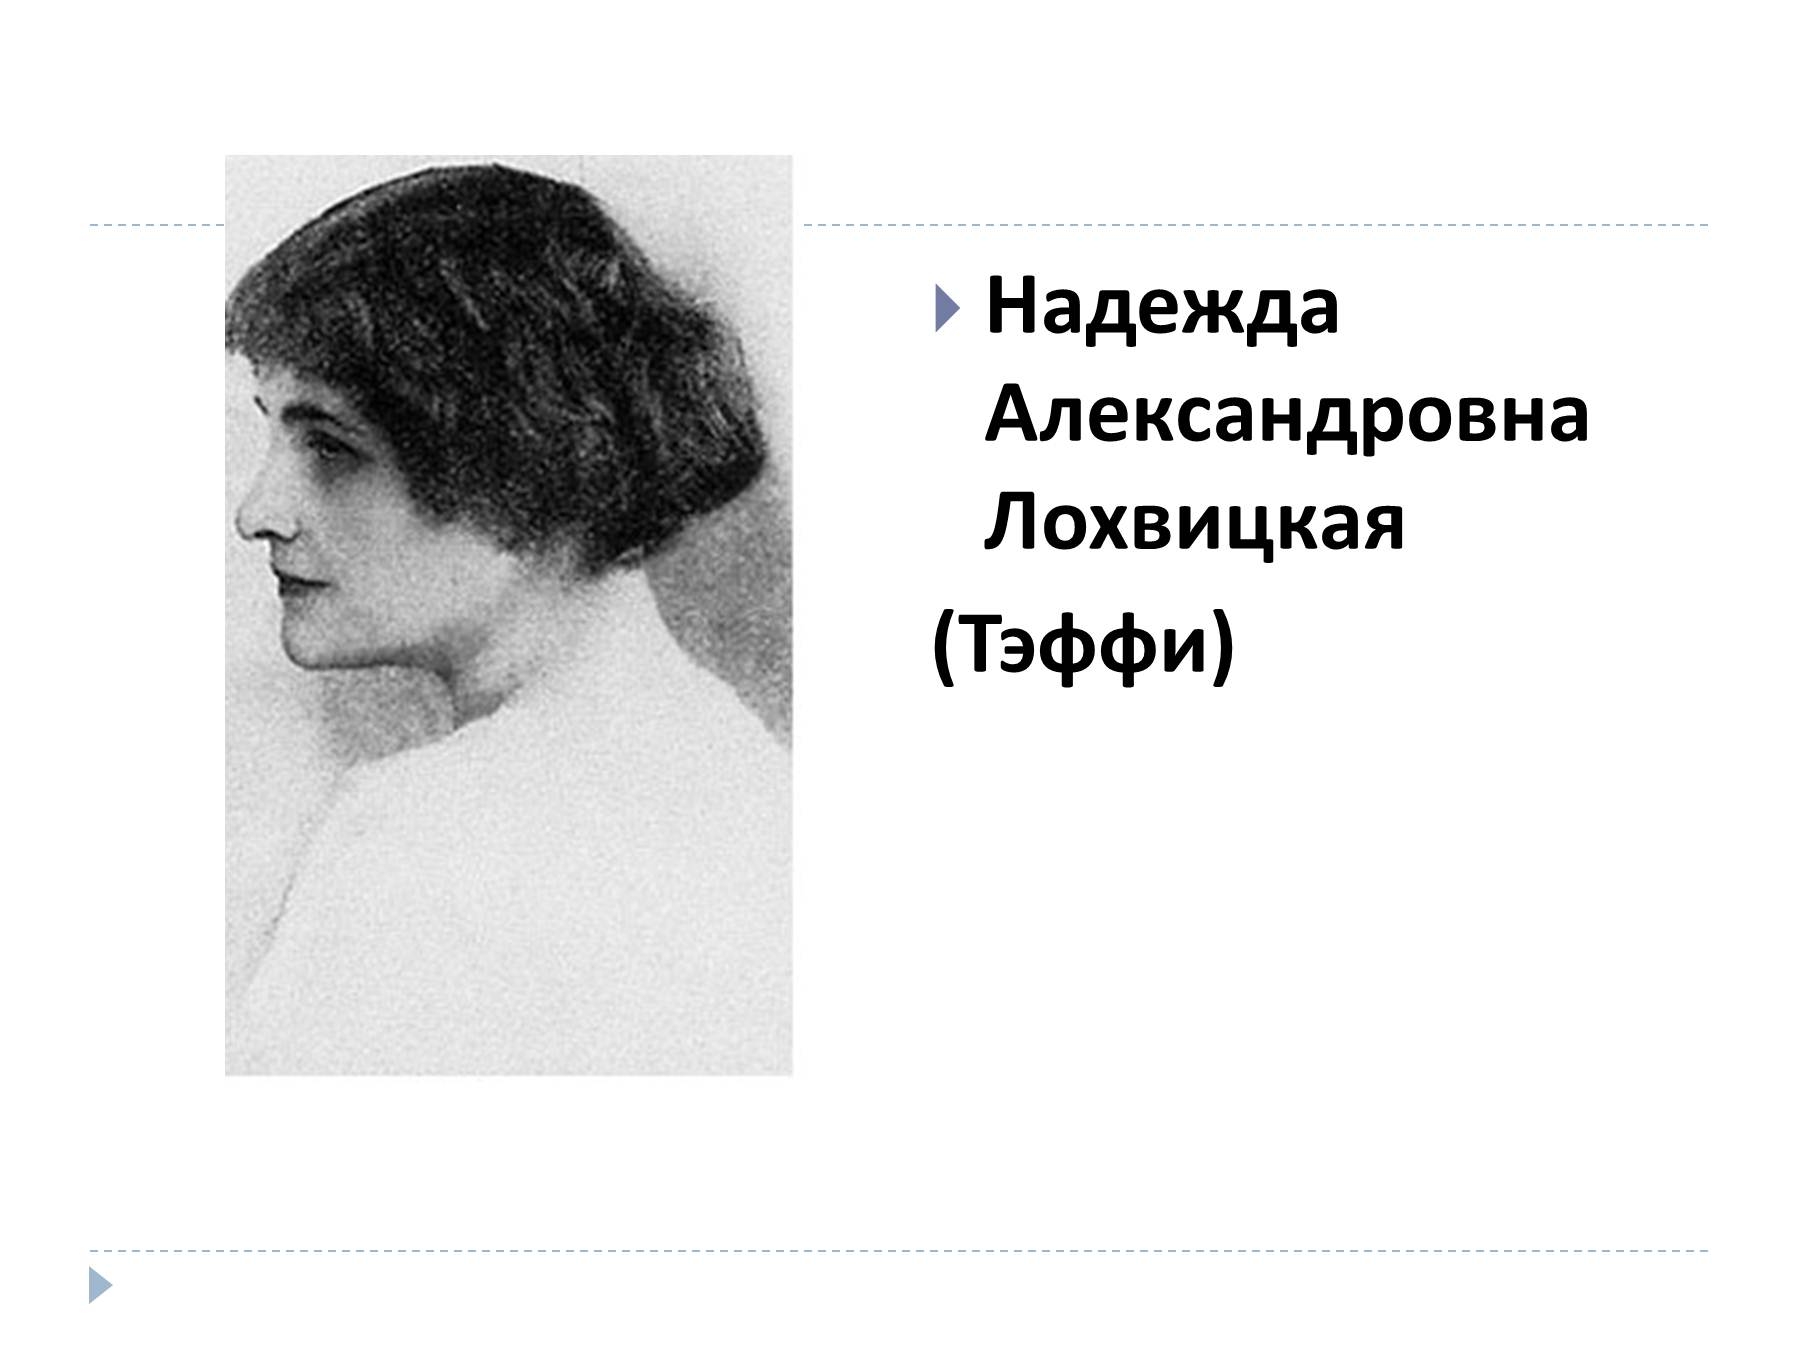 Надежда Александровна Лохвицкая